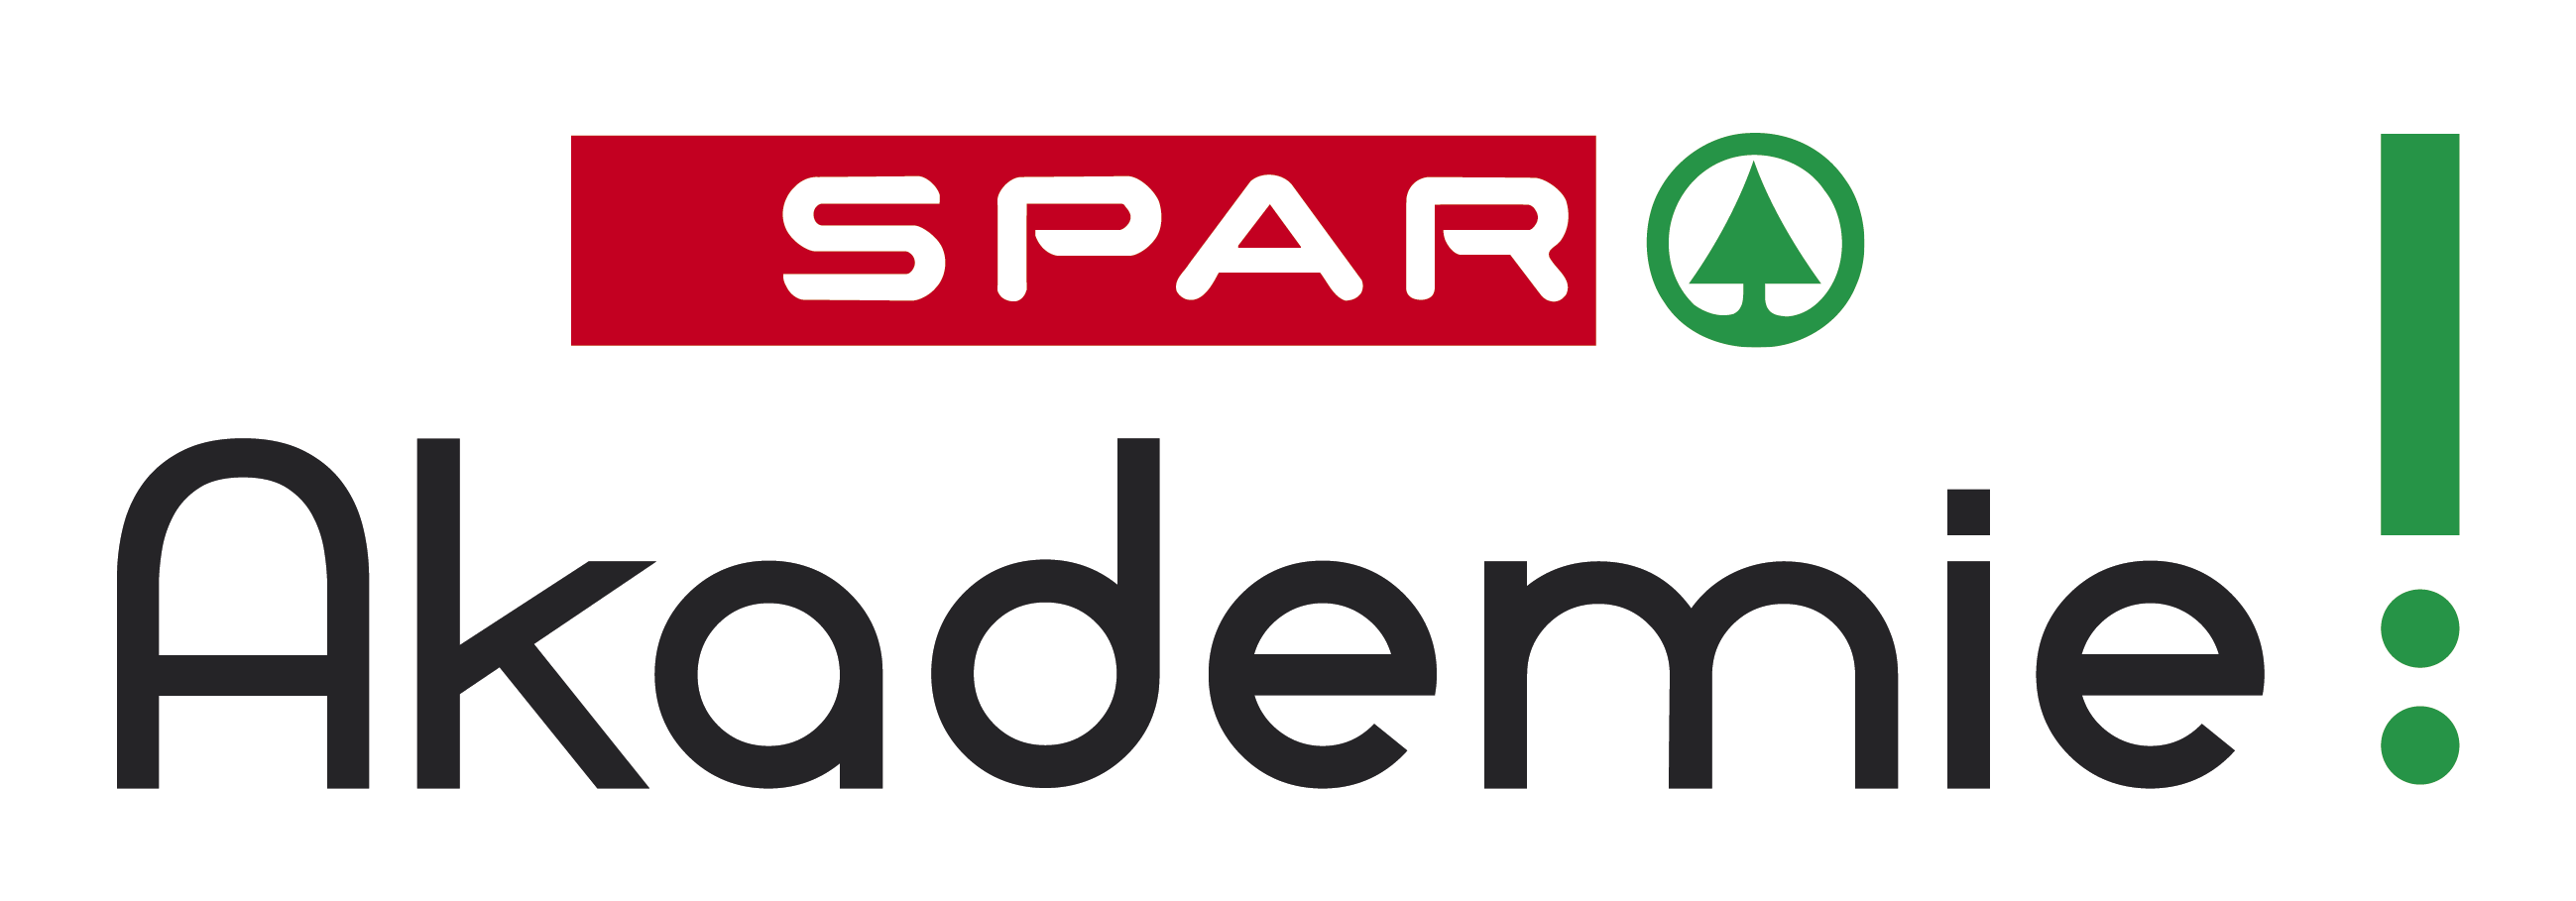 Logo Spar Akademie